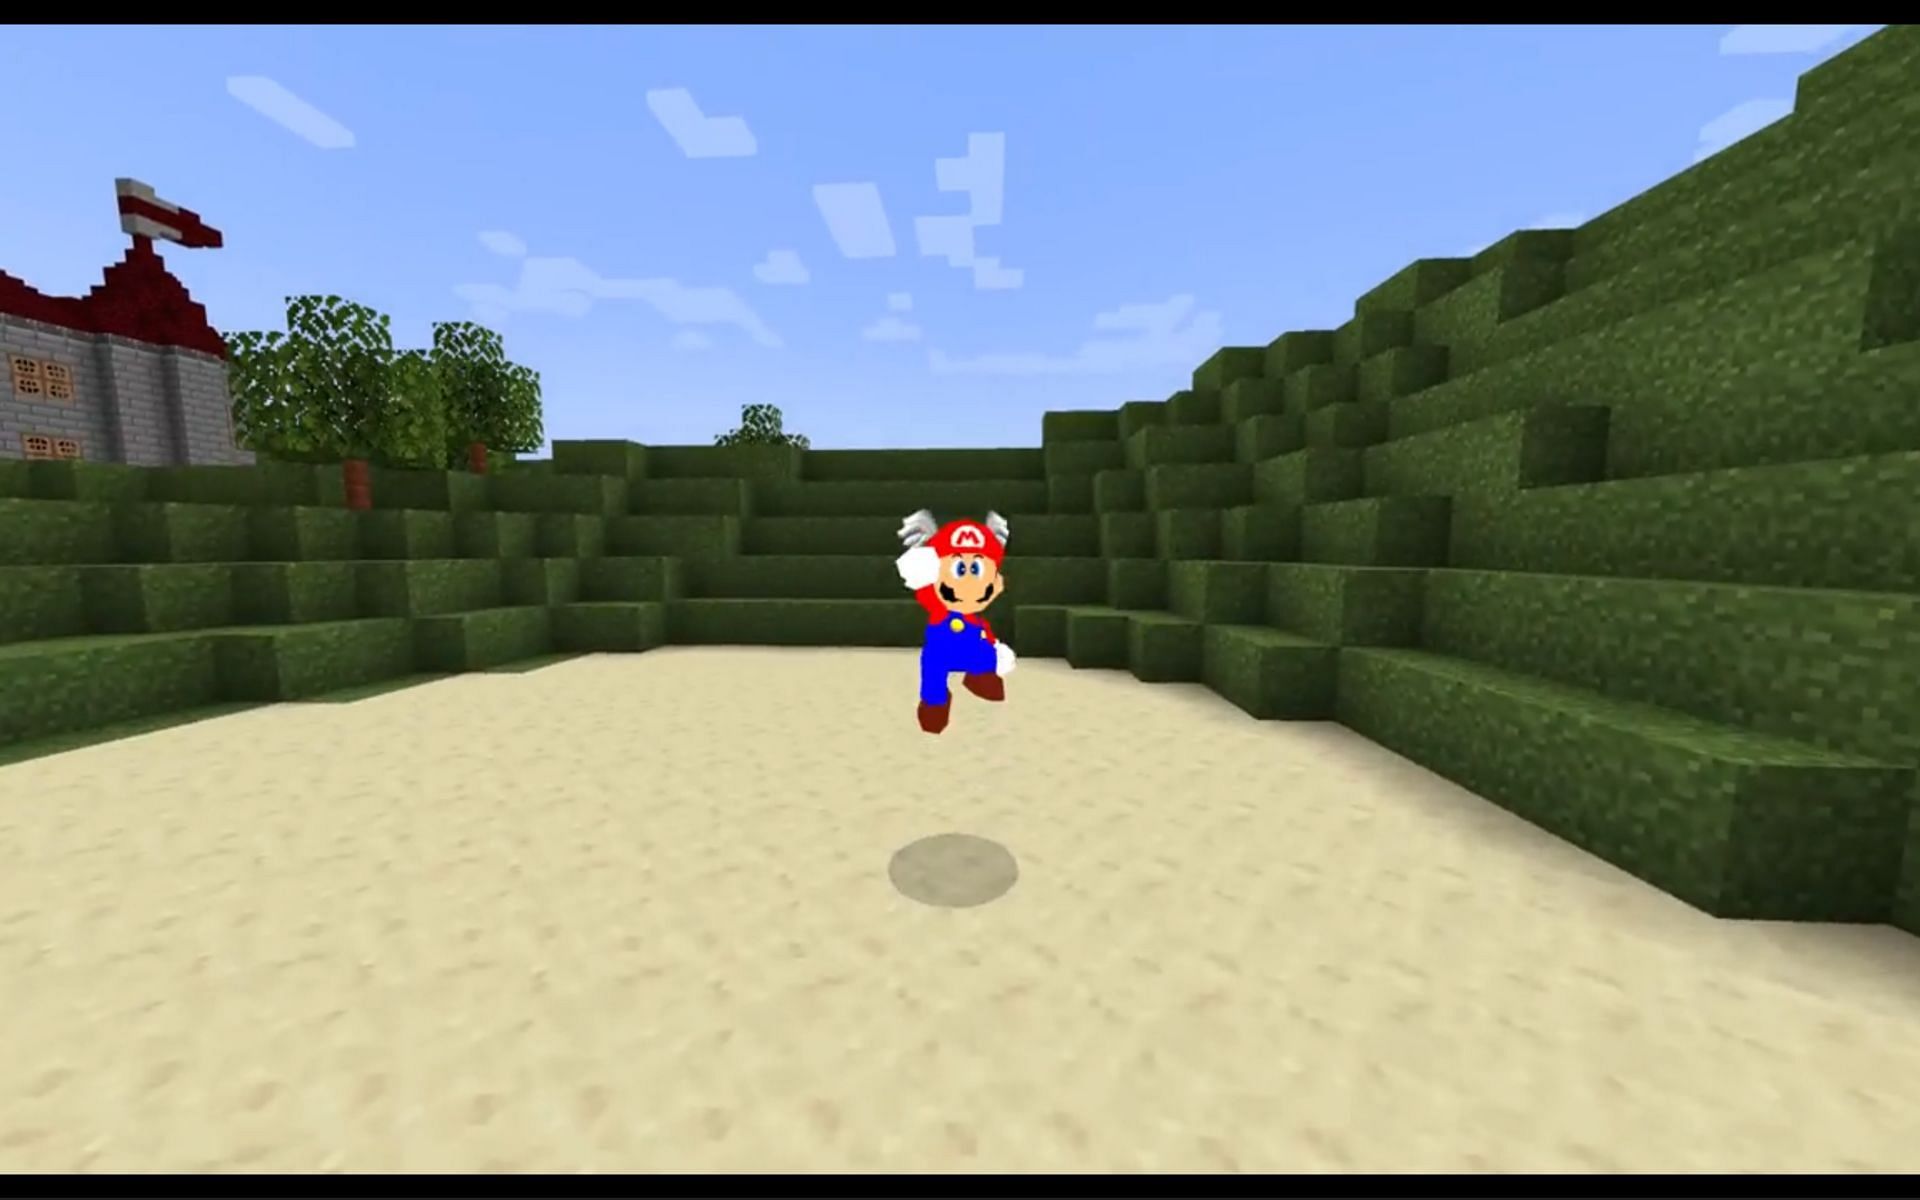 Mario 64 mod (Image via u/Raxolot Reddit)